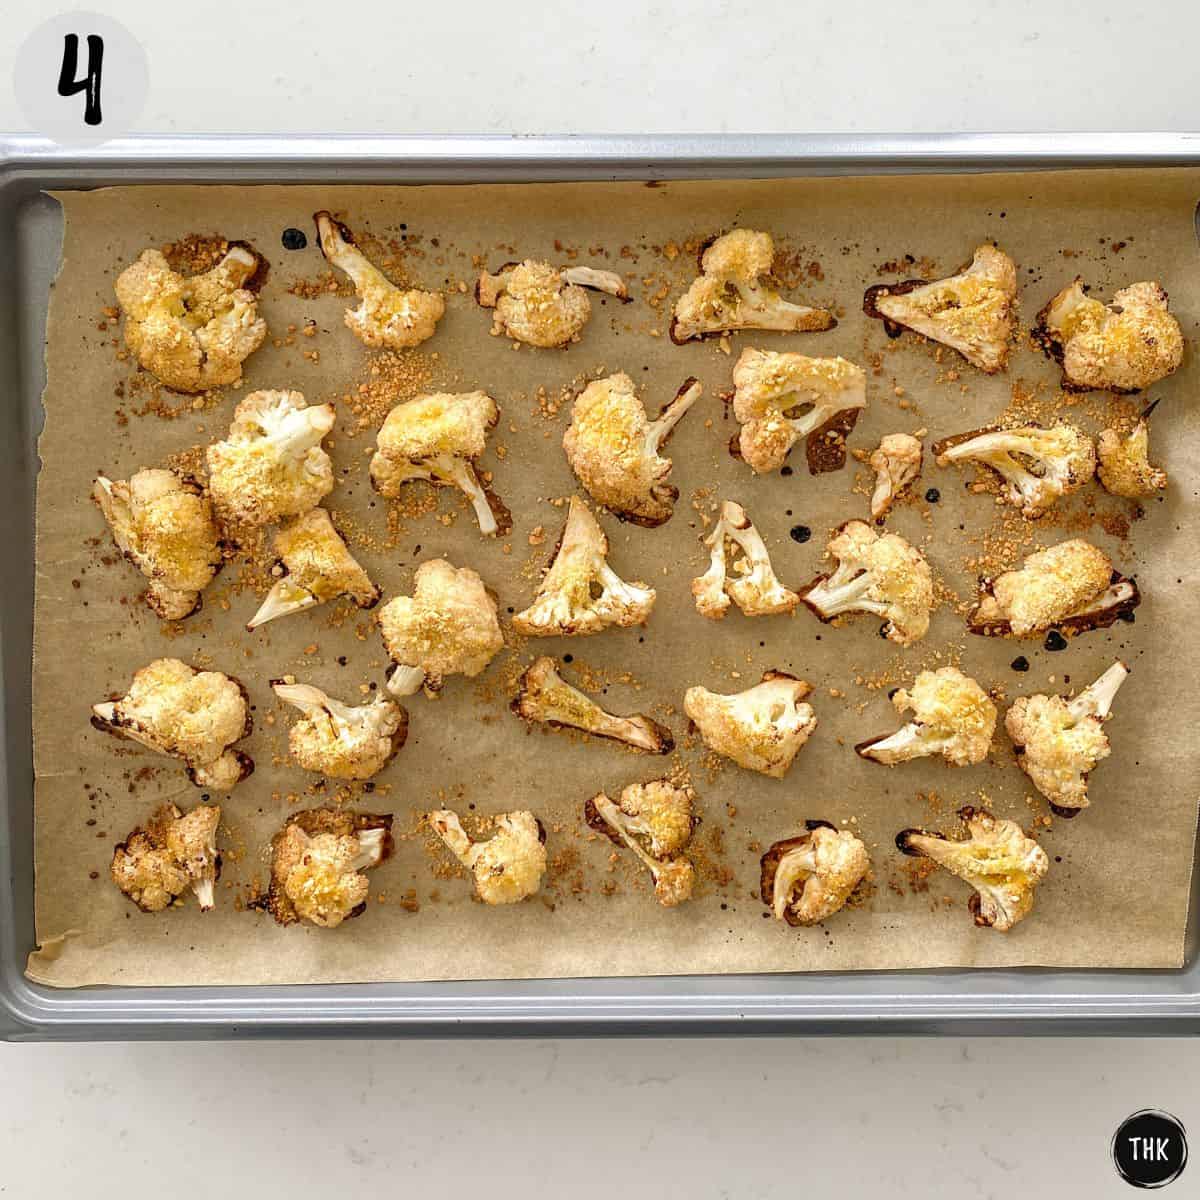 Golden brown cauliflower florets on baking tray.